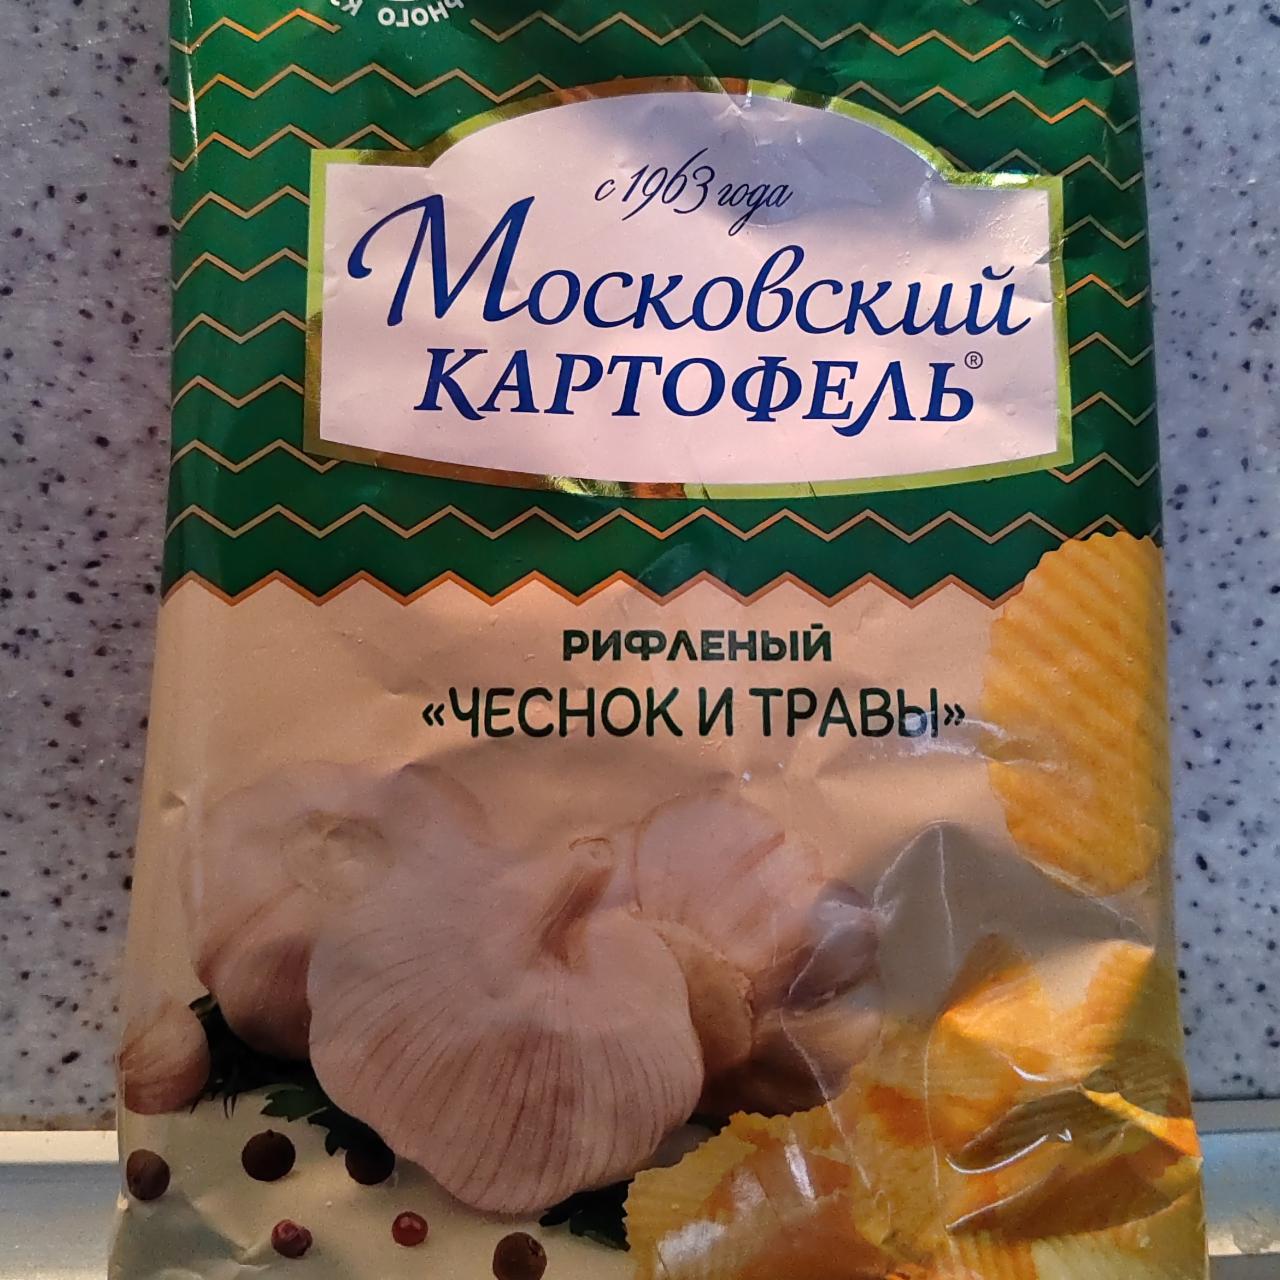 Фото - Чипсы рифленые чеснок и травы Московский картофель